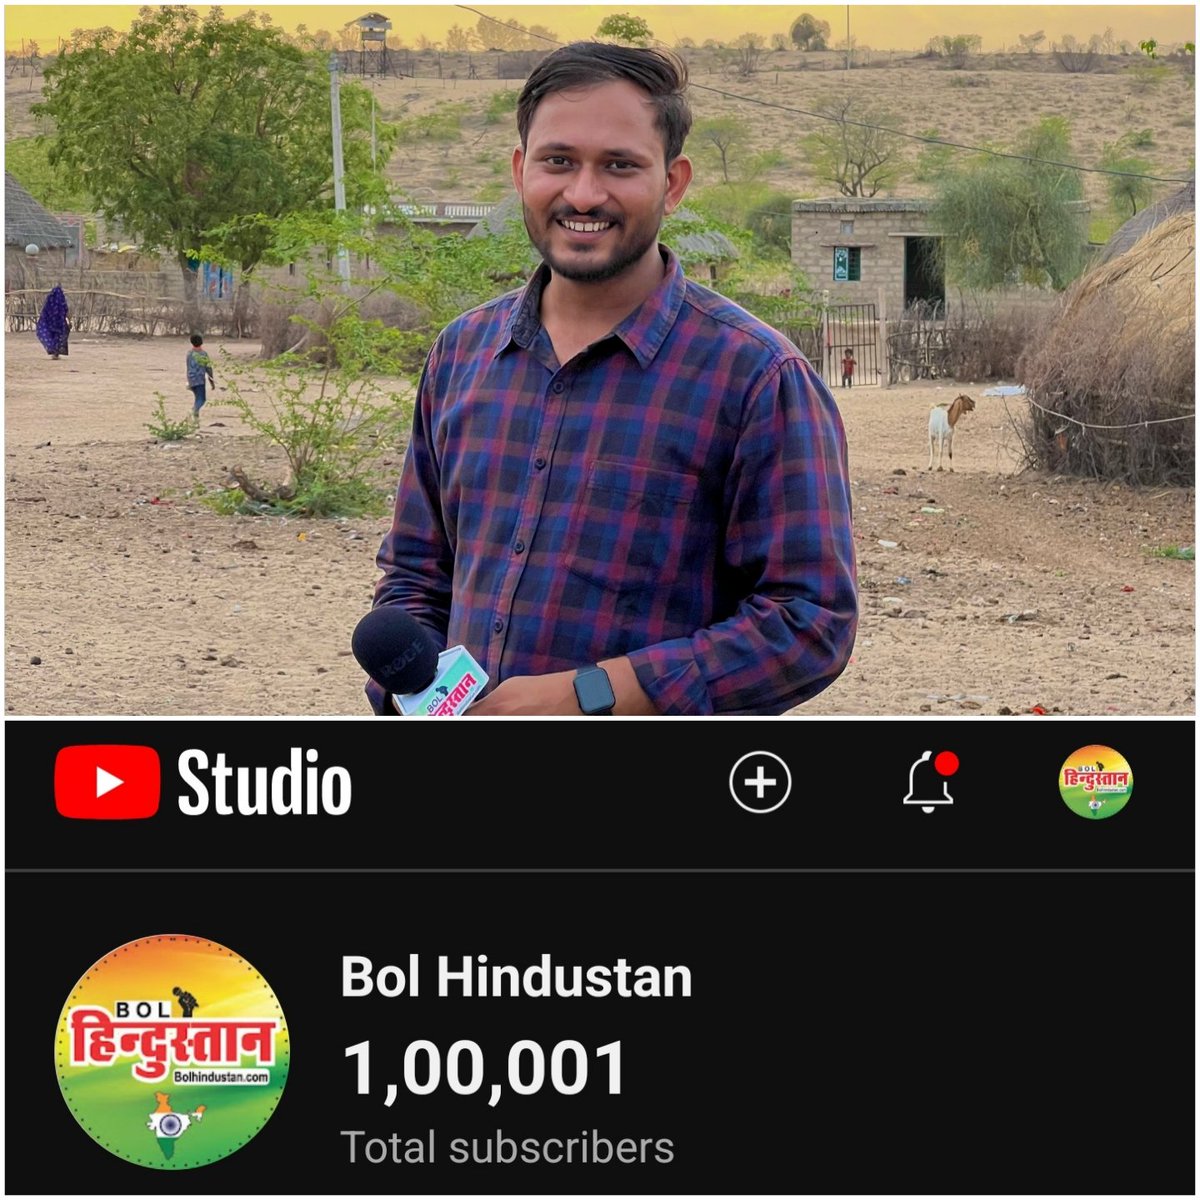 '1 लाख का हुआ Bol Hindustan परिवार' 💐 वर्षो की मेहनत आज रंग लाई है ये खुशी का पल हम सब ने मिलकर पूरा किया है ये मुकाम कोई अकेले मैने नही पाया आप सबका अपना एक हिस्सा हैं आप Bol Hindustan के महज़ एक सब्सक्राइब तक नही है बल्कि आप इस परिवार का हिस्सा हो जितना हक़ मेरा ओर मेरी